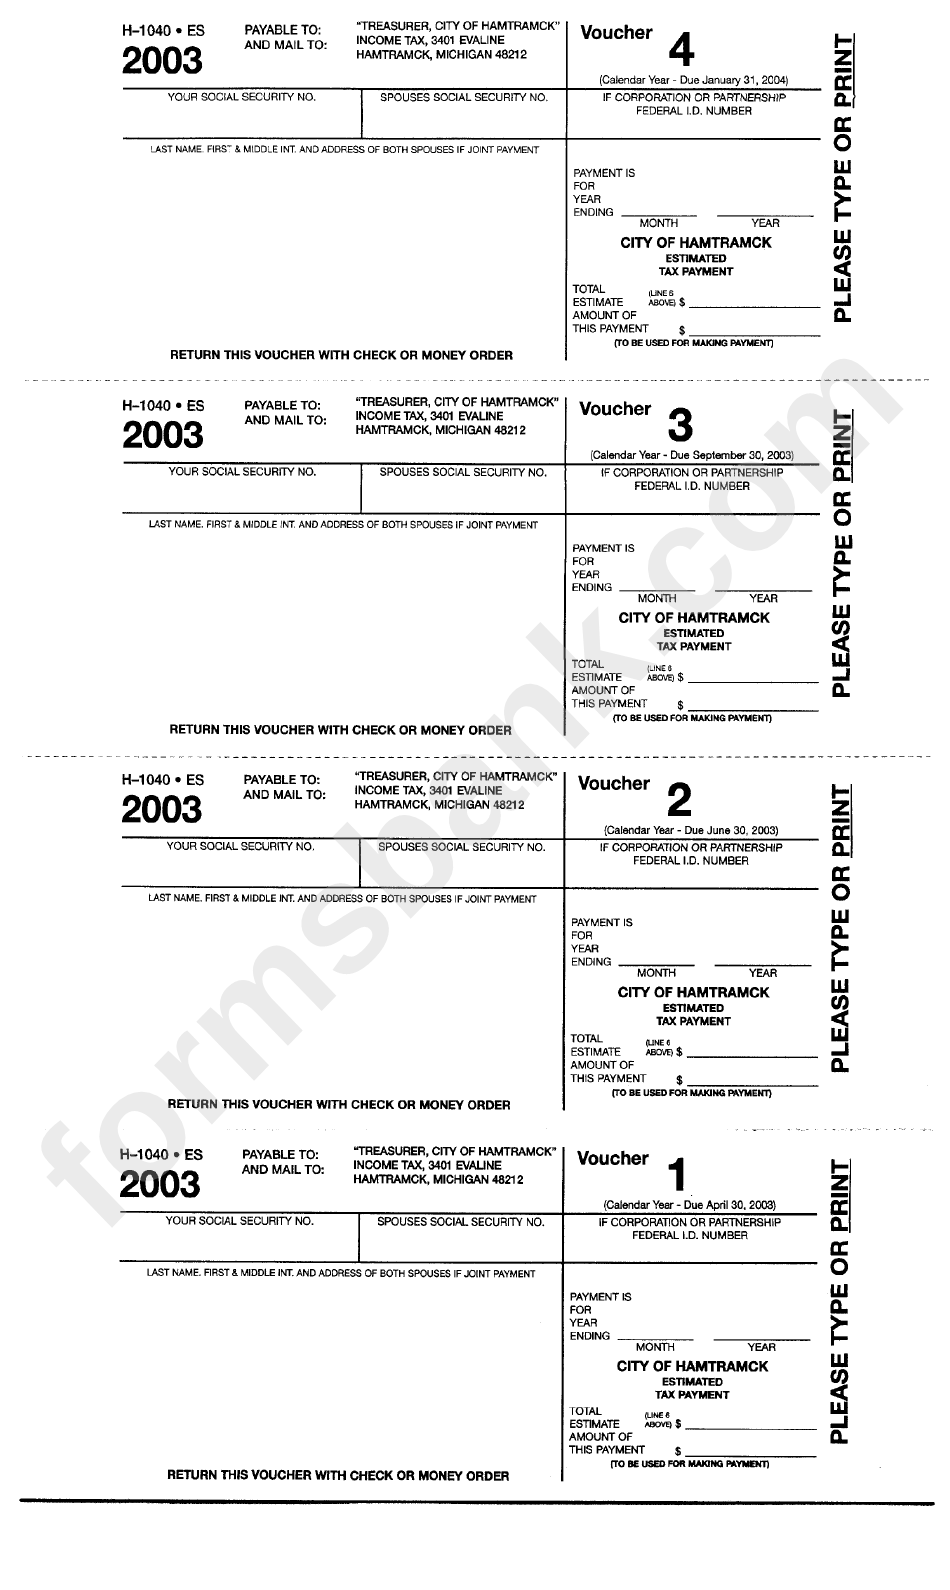 Form H-1040 Es - Estimated Tax Payment Voucher - 2003